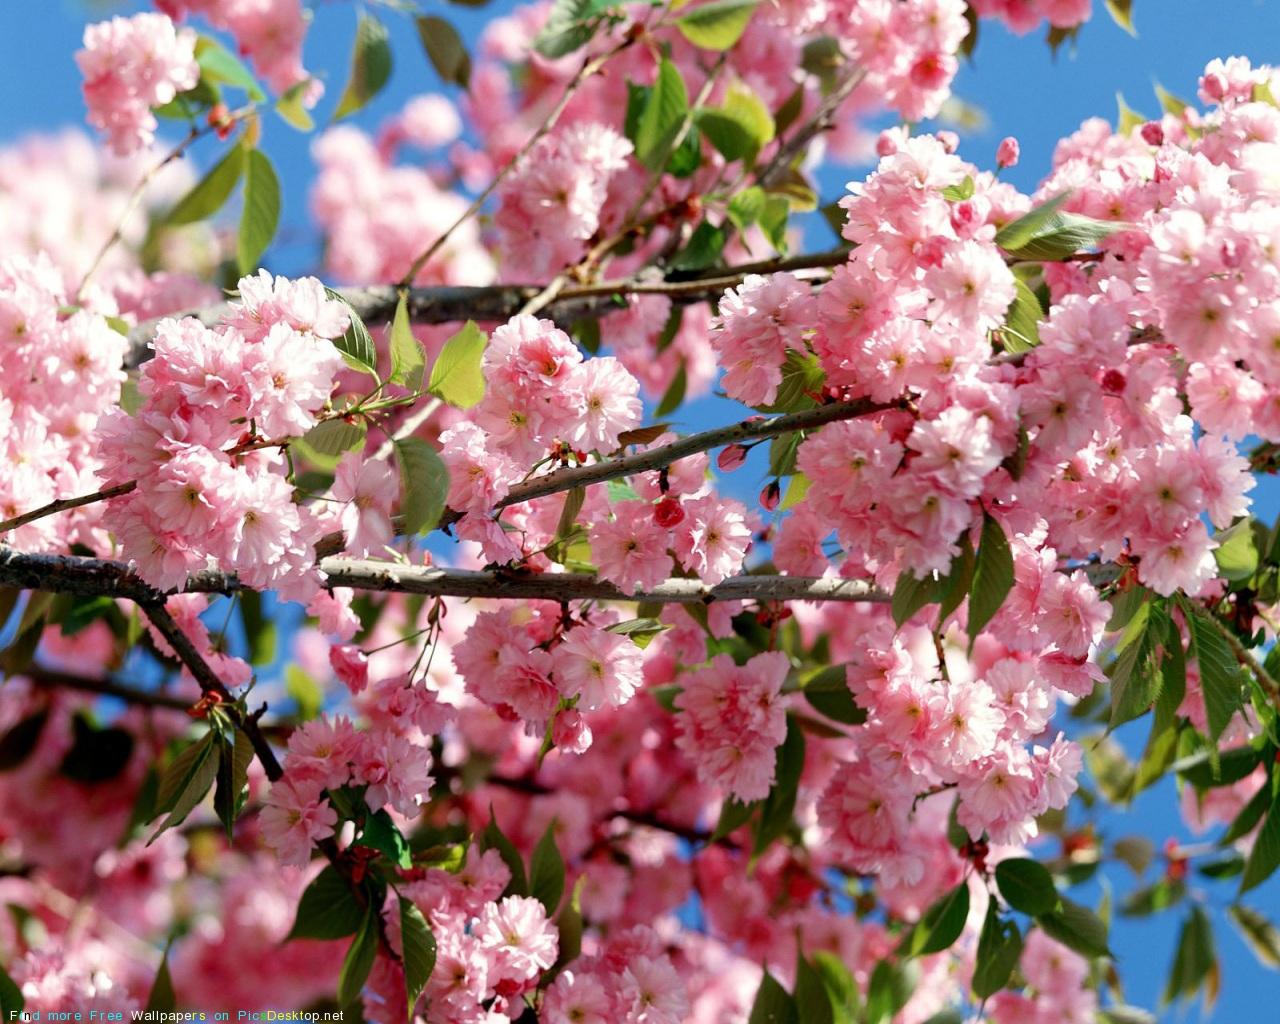 Скачать обои Весенние цветы (Поле, Цветы, Весна) для рабочего стола  1280х1024 (5:4) бесплатно, Фото Весенние цветы Поле, Цветы, Весна на рабочий  стол. | WPAPERS.RU (Wallpapers).